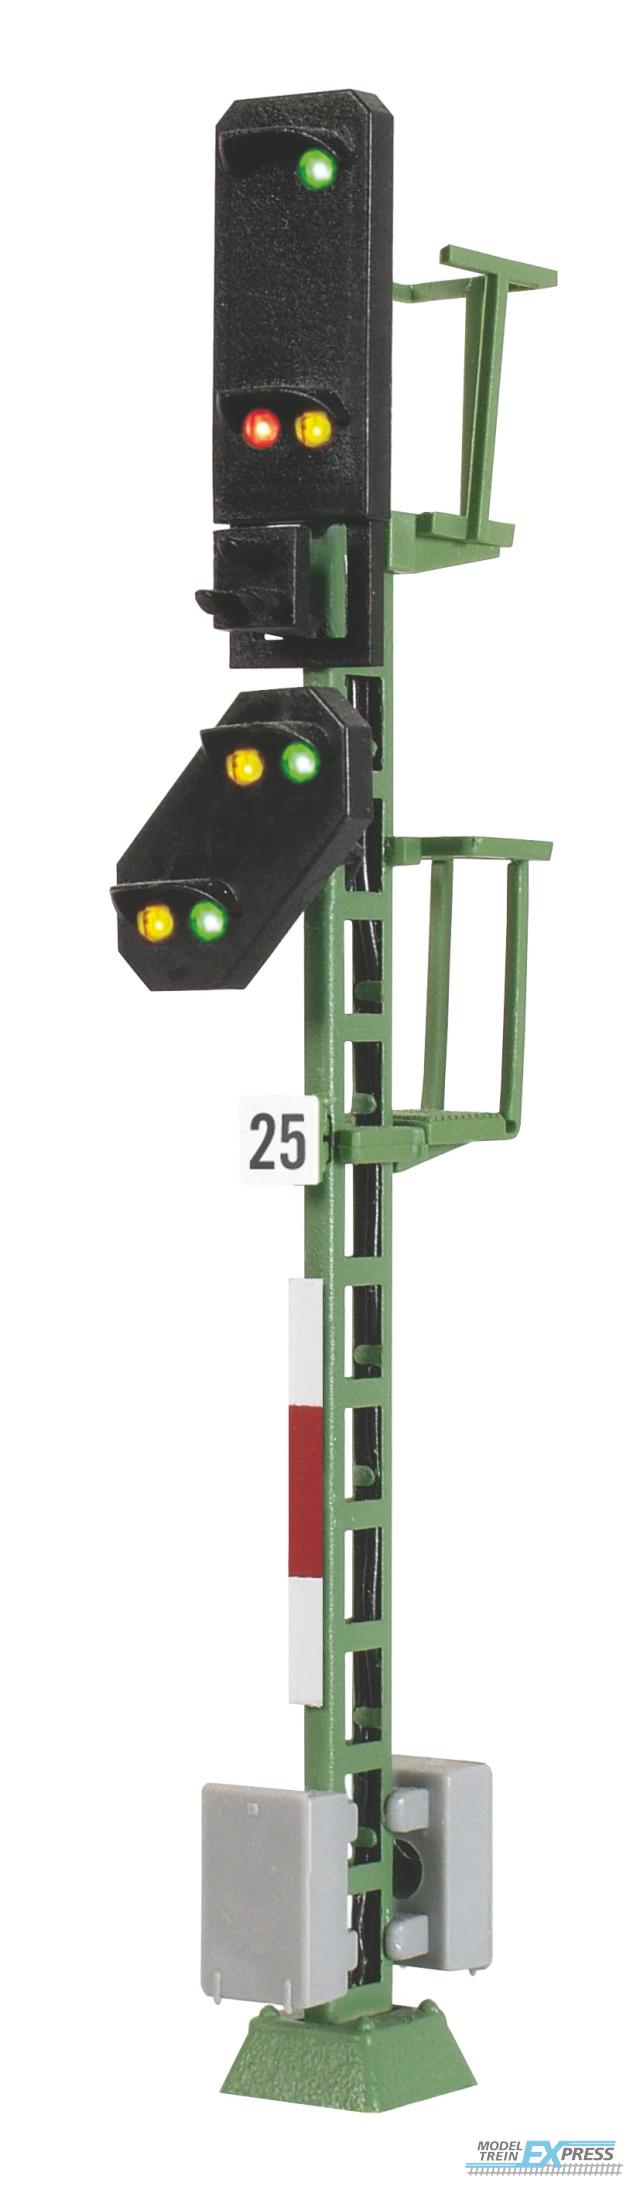 Viessmann 4725 H0 Licht-Einfahrsignal mit Vorsignal und Multiplex-Technologie